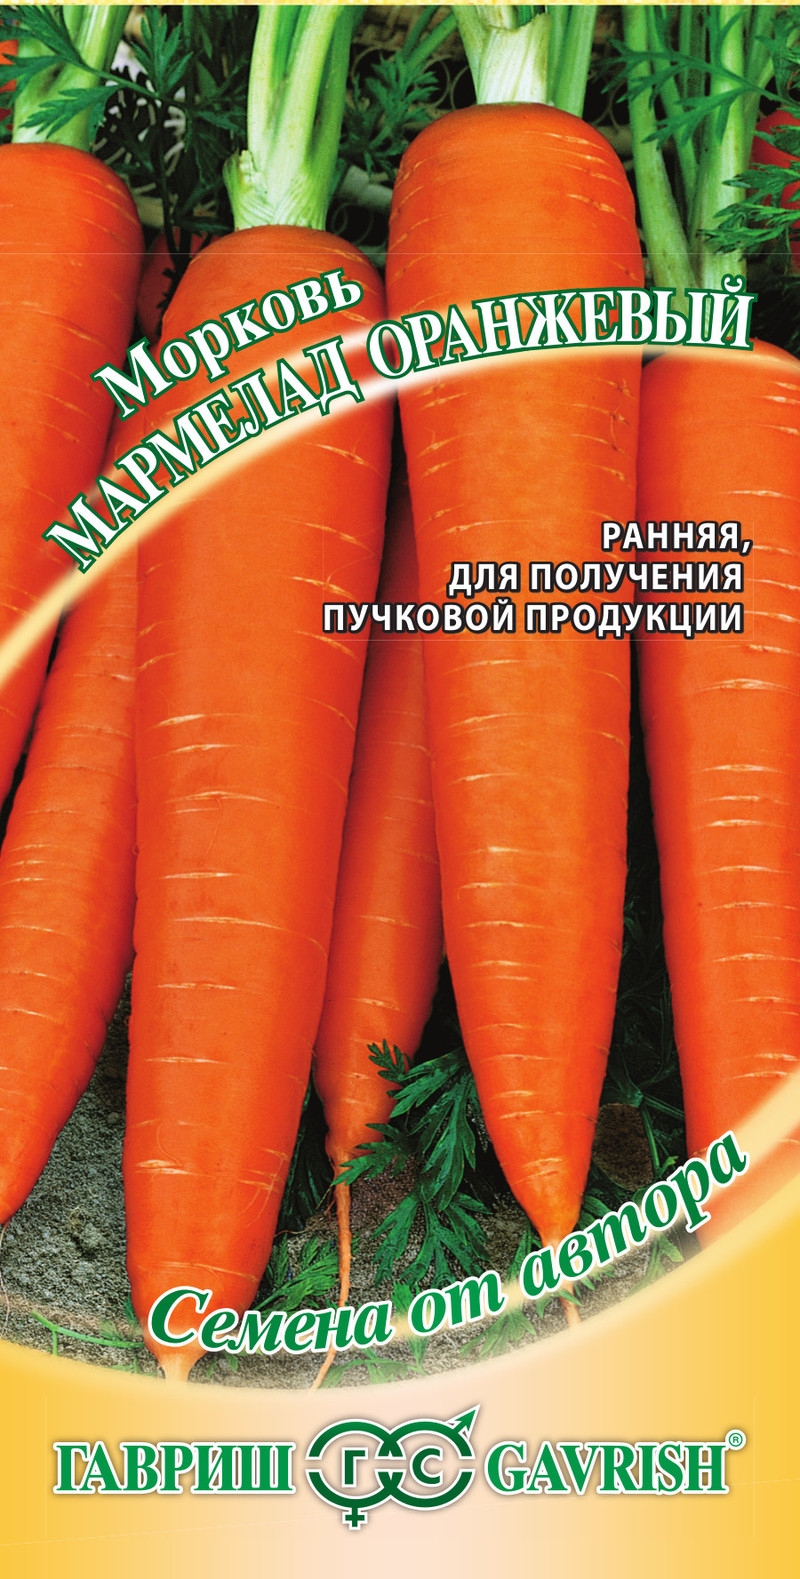 Морковь Мармелад Оранжевый раннеспелая, для хранения 2гр Гавриш/ЦВ